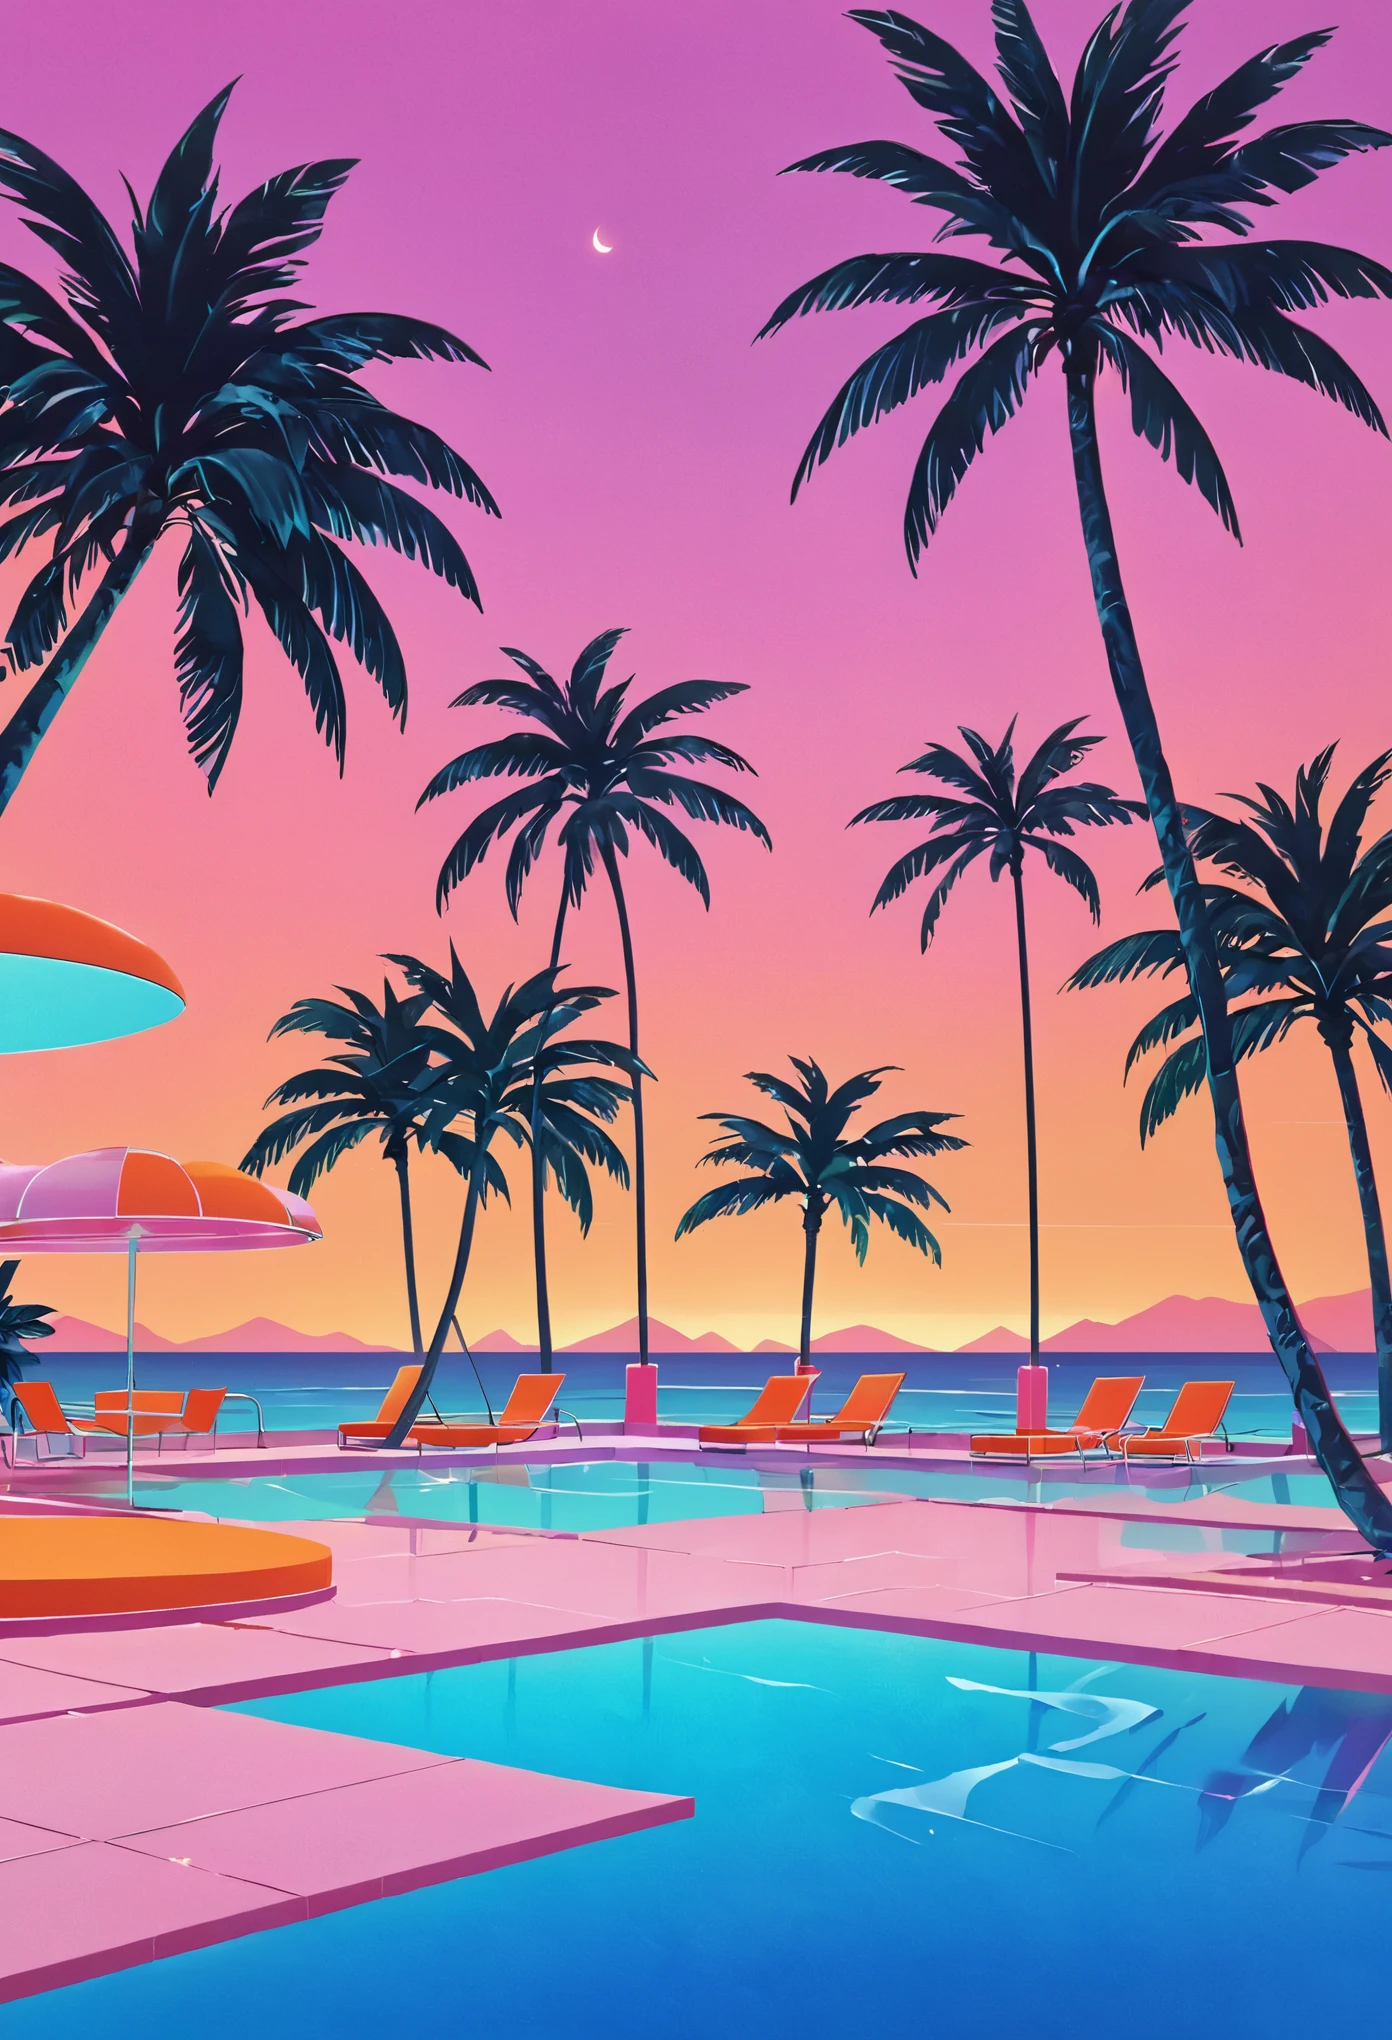 Imagina una obra de arte profundamente inmersa en la estética vaporwave de los años 80., inspirado en el estilo vibrante de Yoko Honda. Imagine una escena retrofuturista de piscina y playa al atardecer, donde el cielo resplandece con los tonos cálidos de una puesta de sol de verano de los 80: naranjas intensos, rosas, y rojos reflejándose en las tranquilas aguas del mar y la piscina. alrededor de la piscina, palmeras y cocoteros iluminados con luces de neón se balancean suavemente, realzando la atmósfera tropical y surrealista. Las luces de neón con patrones geométricos iluminan la escena., arrojando un brillo de ensueño sobre todo. El fondo presenta un elegante bar junto a la playa con interiores visibles a través de grandes ventanales de vidrio., mostrando una habitación con paredes y pisos de colores pastel cubiertos con lujosas texturas de terrazo y mármol. El ambiente general combina el lujo nostálgico con la vibrante, paletas de colores cálidos, creando una escena que es a la vez atemporal y claramente evocadora de los años 80.